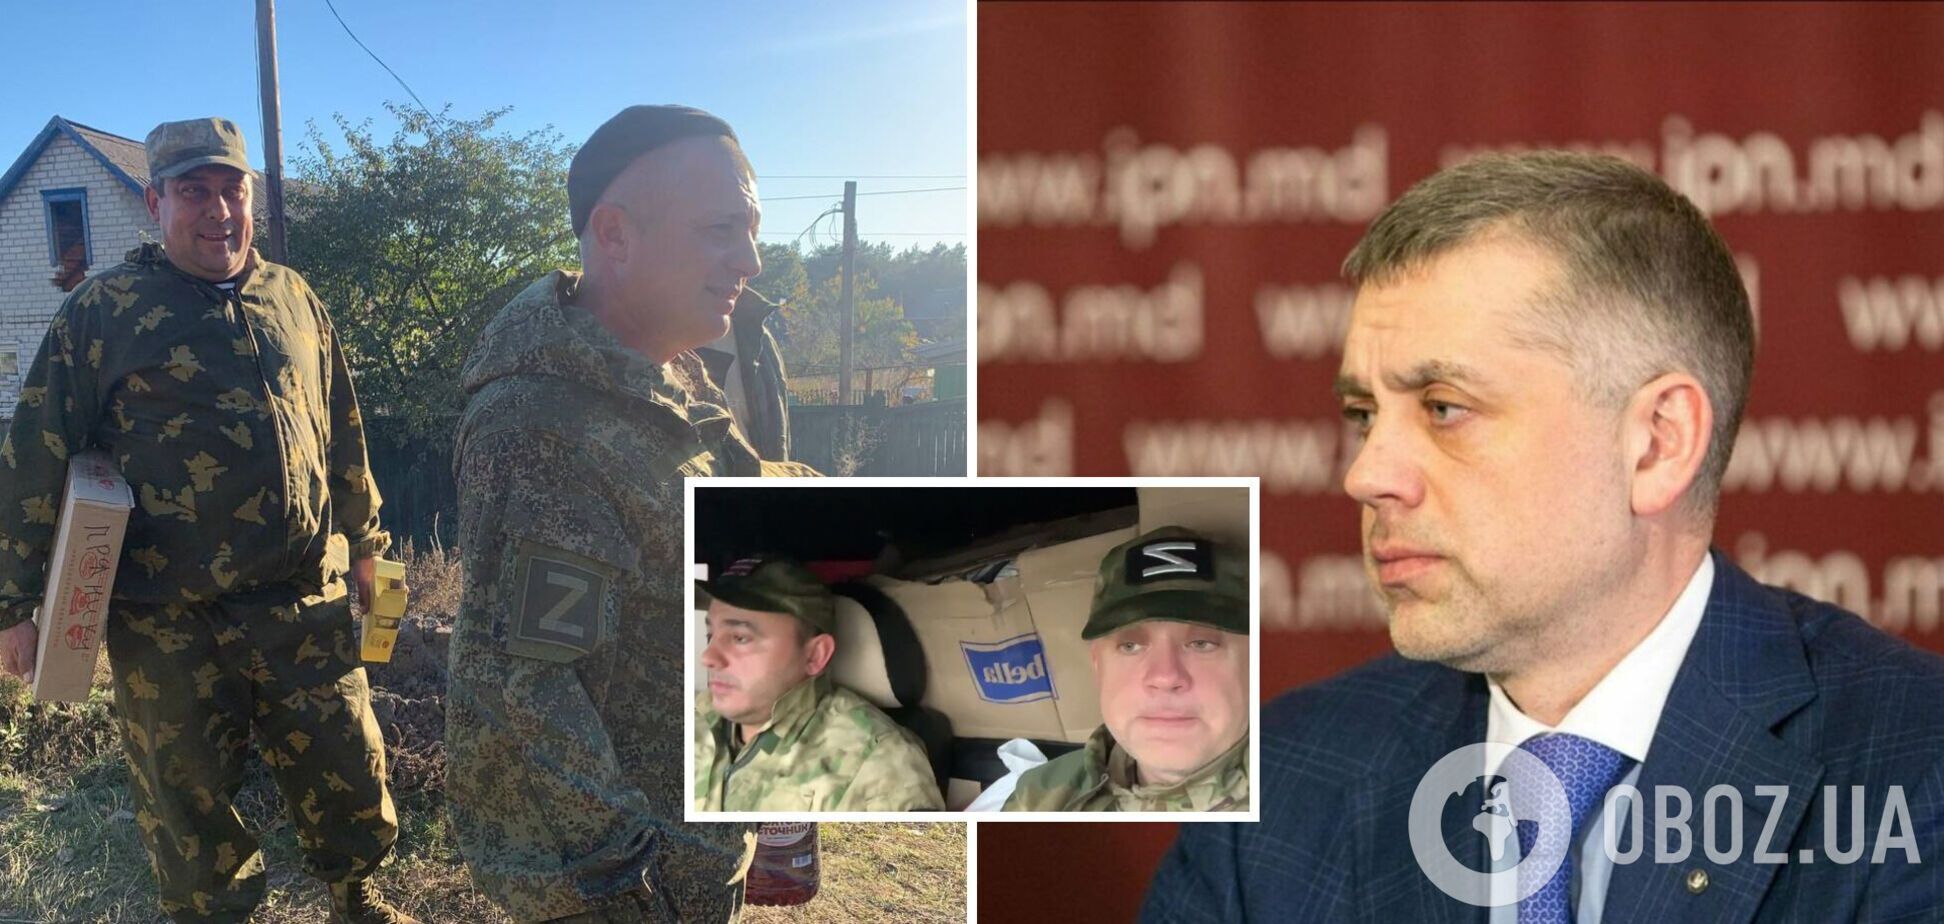 Глава Партии регионов Молдовы собирает средства для солдат армии РФ: даже похвастался помощью от молдован. Фото и видео